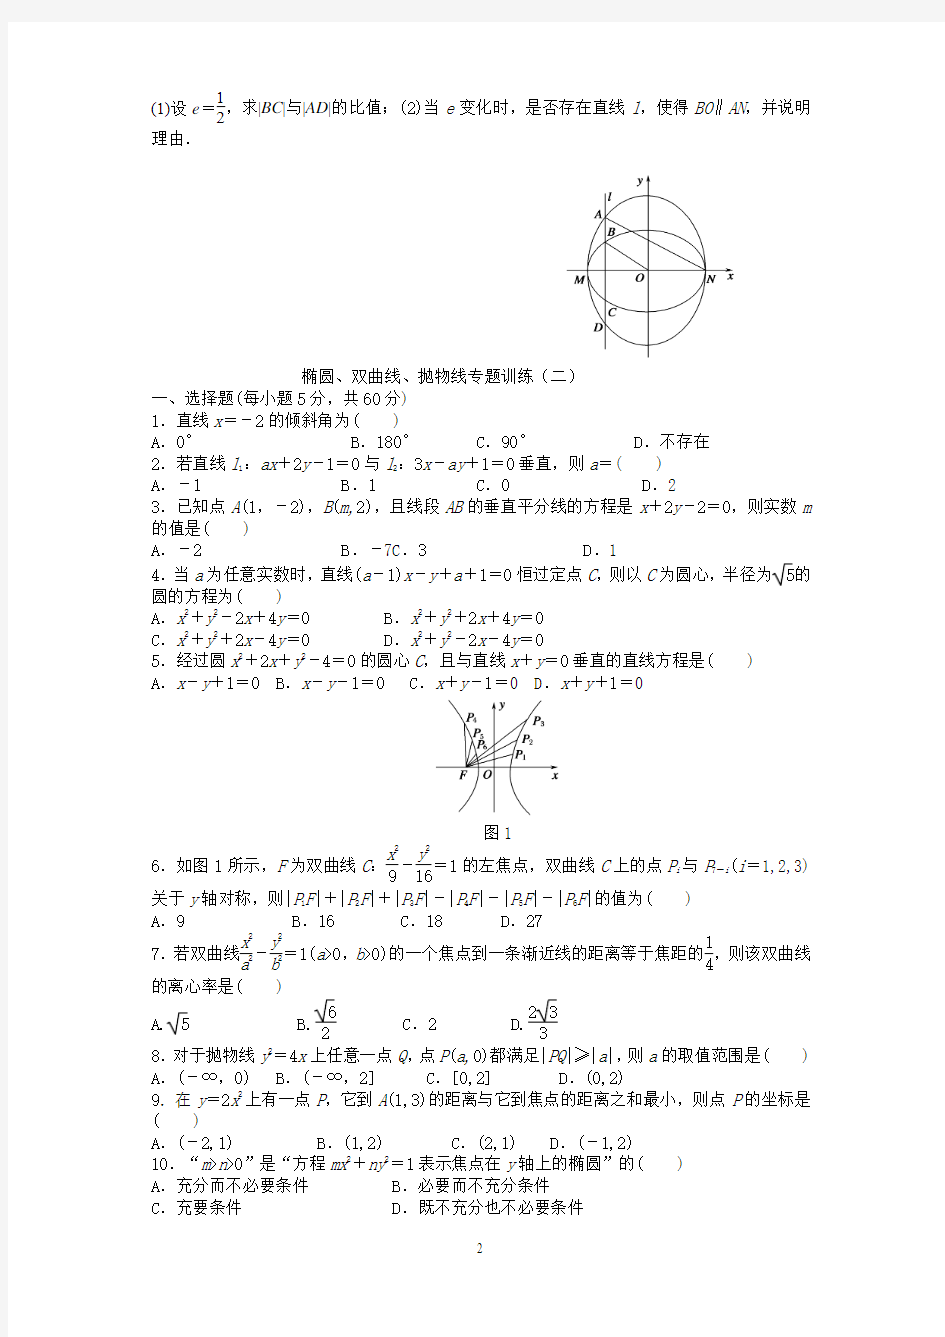 椭圆、双曲线、抛物线专题训练(一)